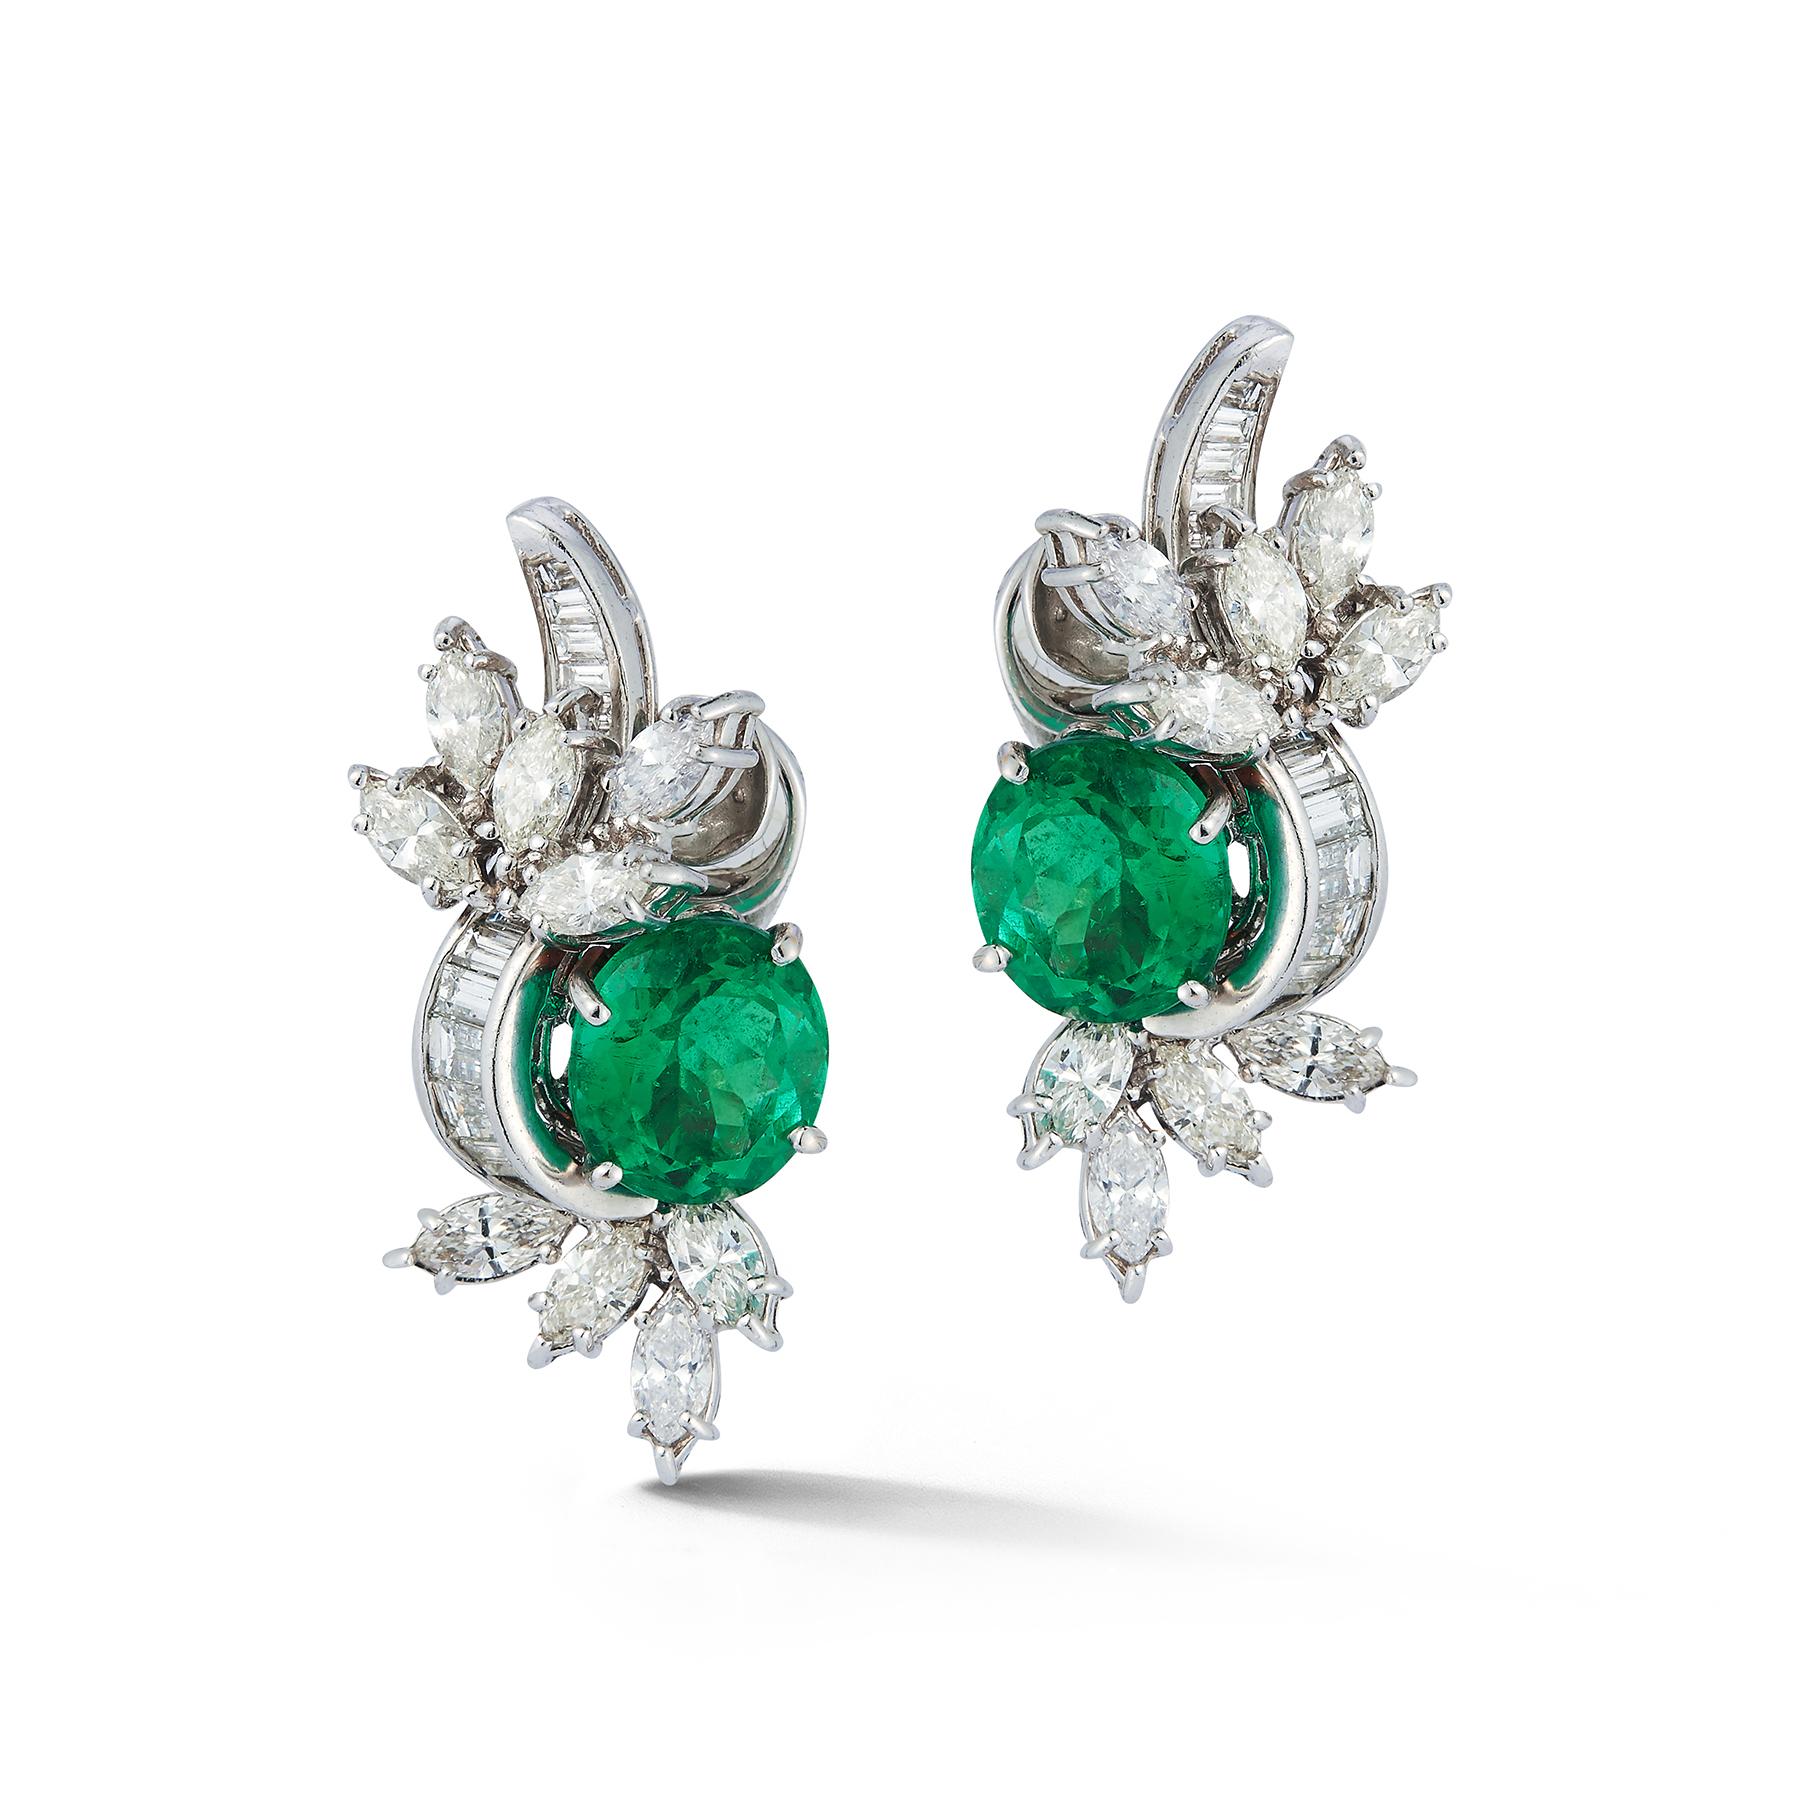 Emerald & Diamond Flower Earrings, 2 runde geschliffene Smaragde ca. 6,55 cts, 18 Marquise geschliffene Diamanten ca. 3,09 cts & 26 spitz zulaufende Baguette geschliffene Diamanten ca. .90 cts in Platin gefasst.

Abmessungen: 1